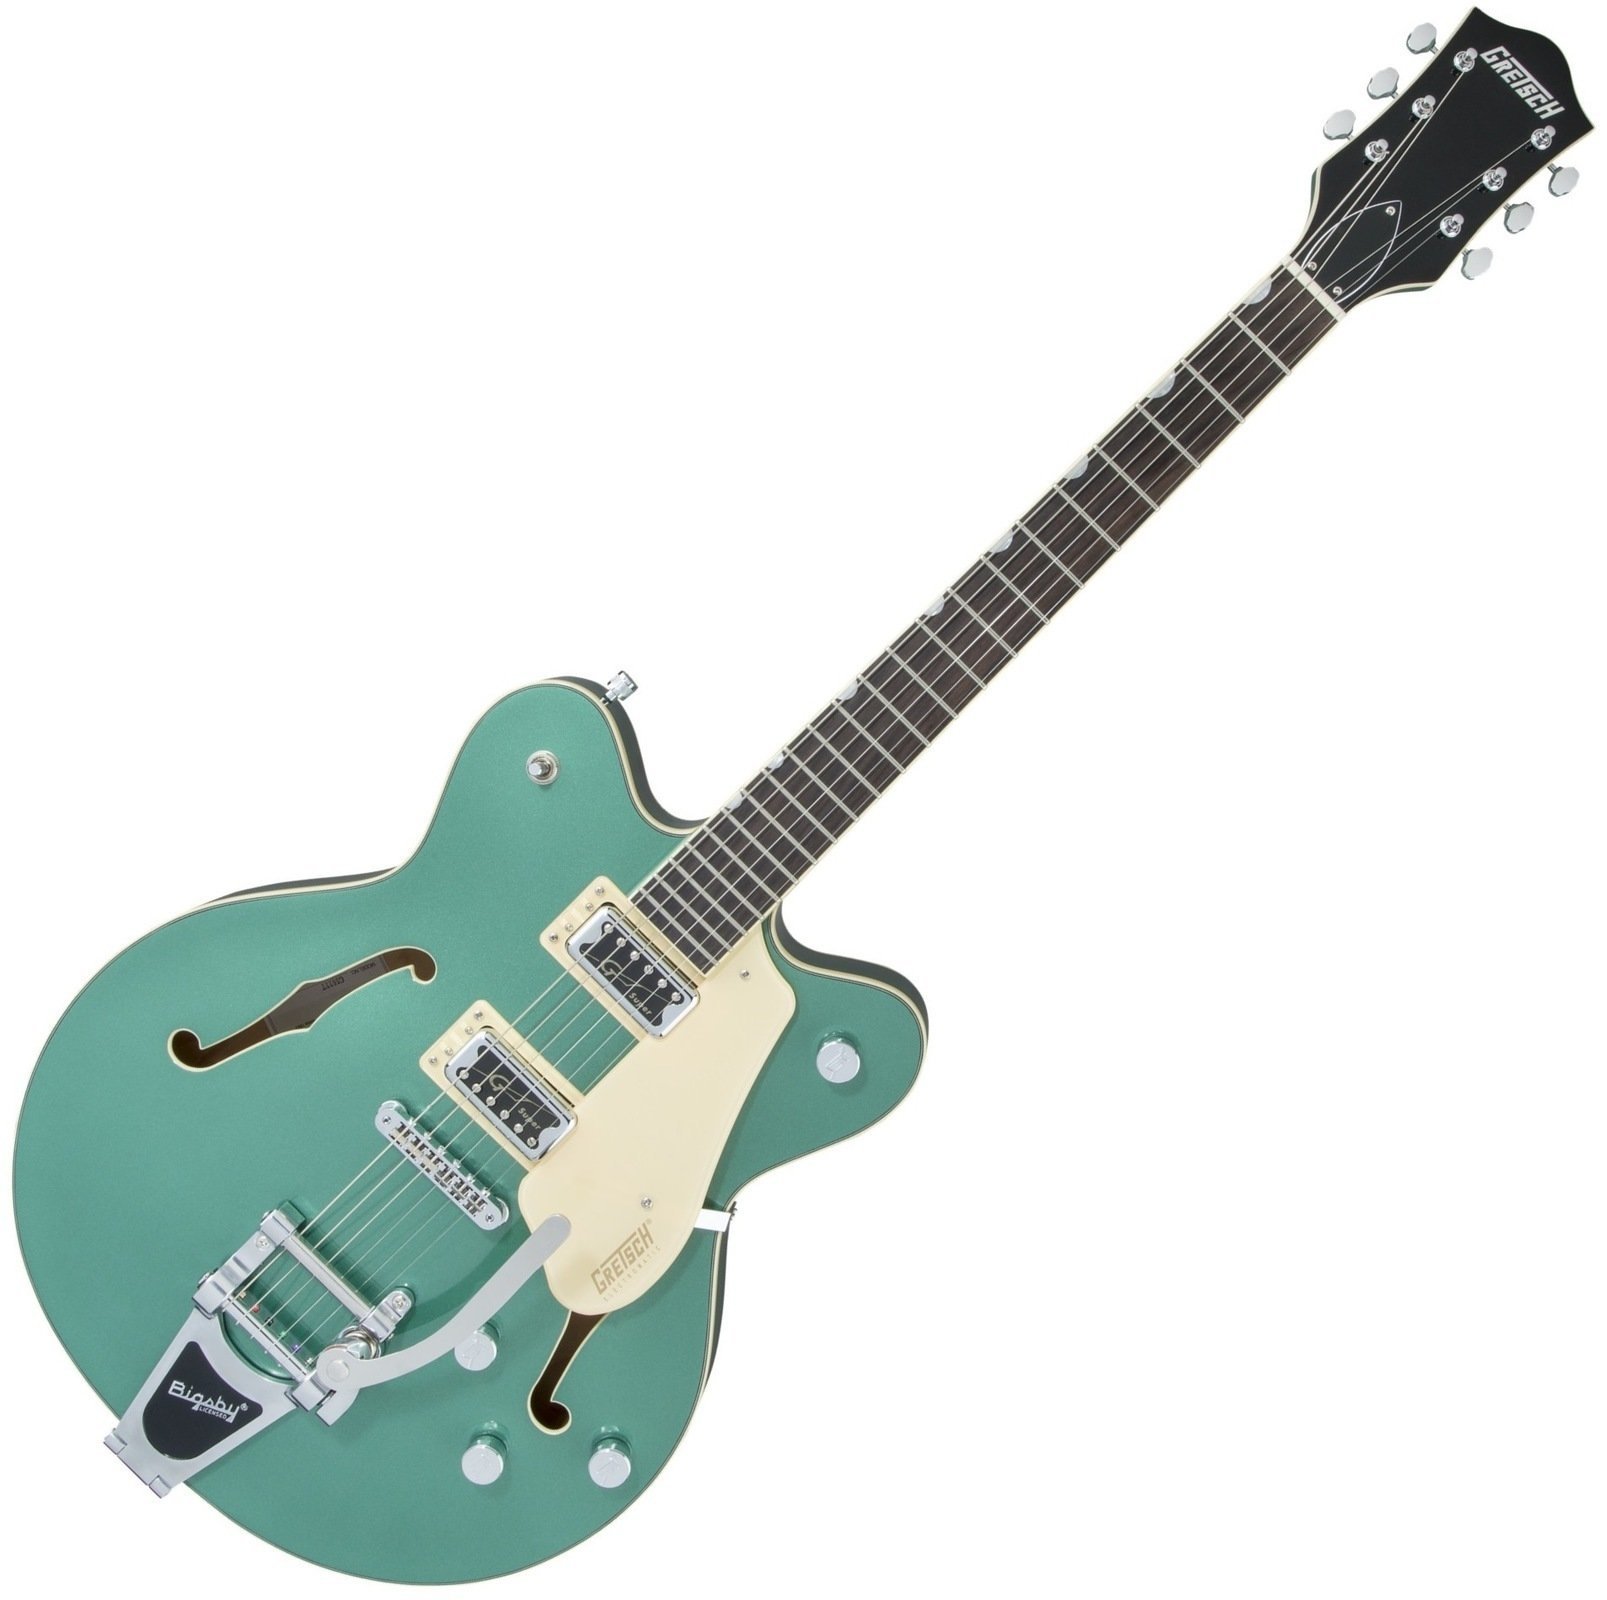 Semiakustická kytara Gretsch G5622T Electromatic Double Cutaway RW Georgia Green